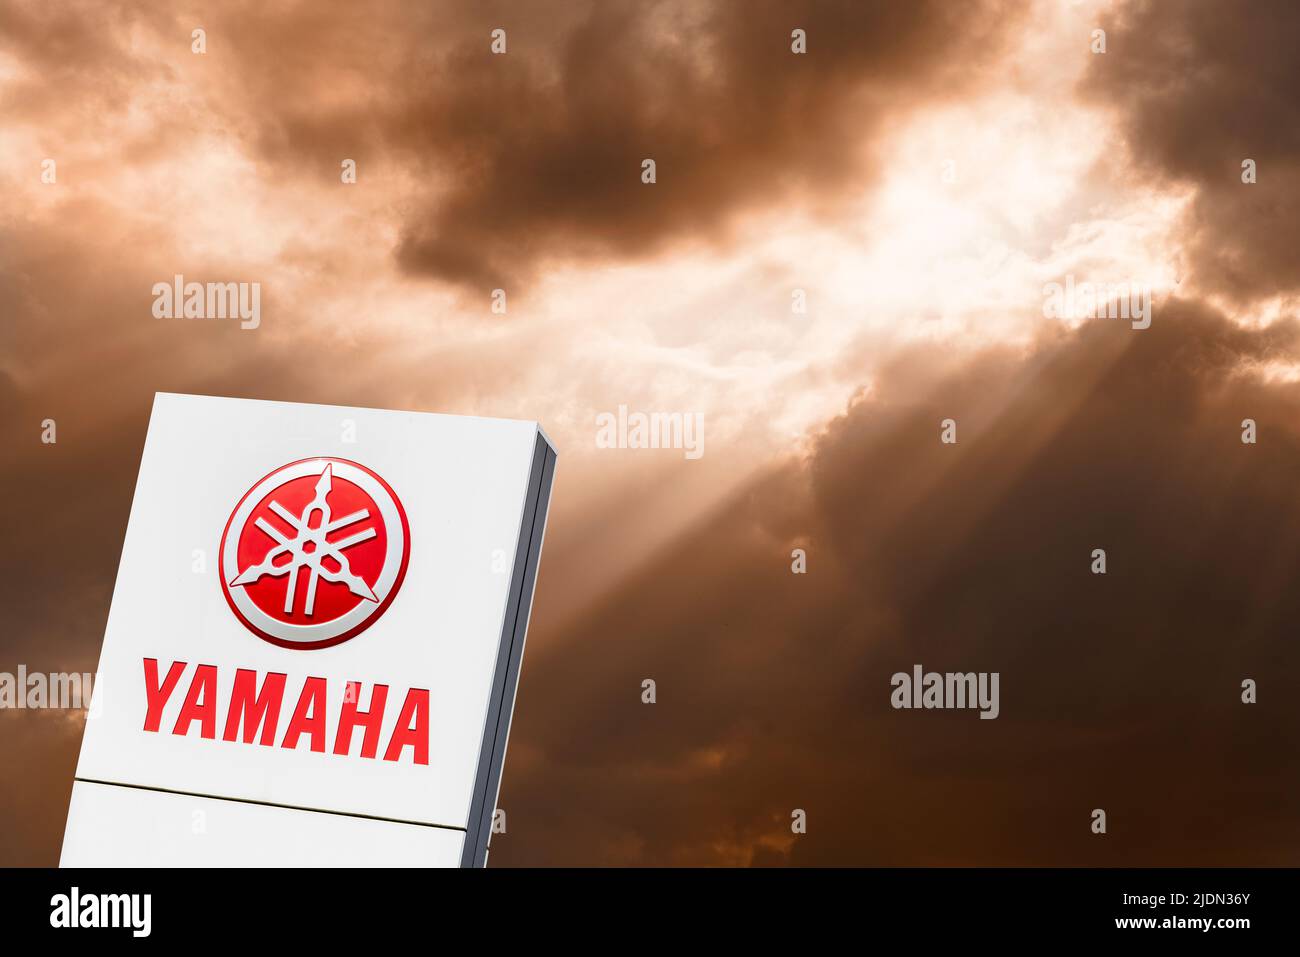 Firmenschild und Logo der Autofirma YAMAHA Foto Stock